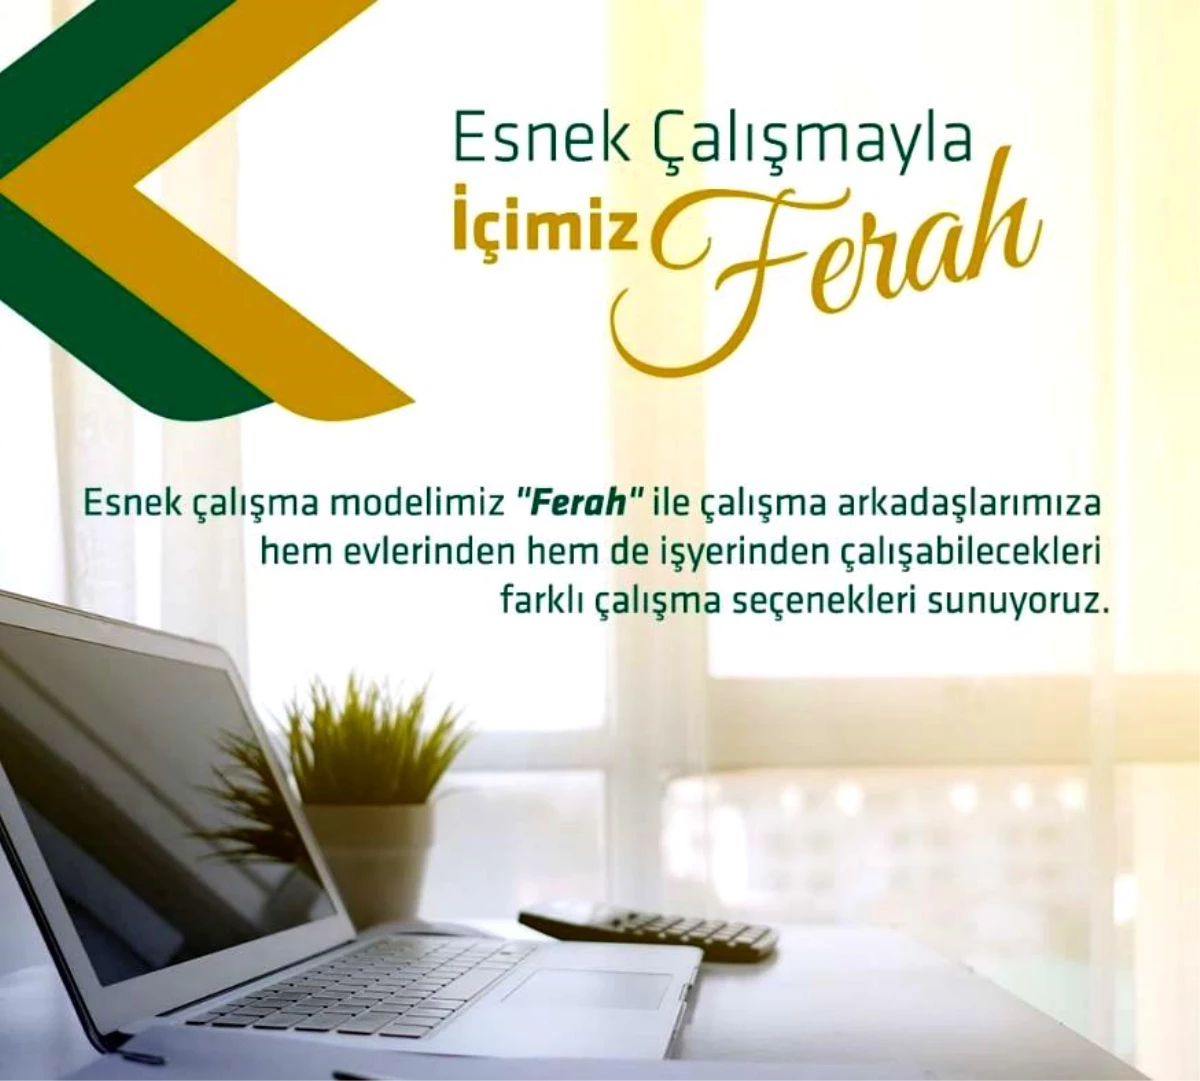 Kuveyt Türk, 'Ferah' çalışma modeli ile sürekli esnek çalışmaya geçiş yaptı